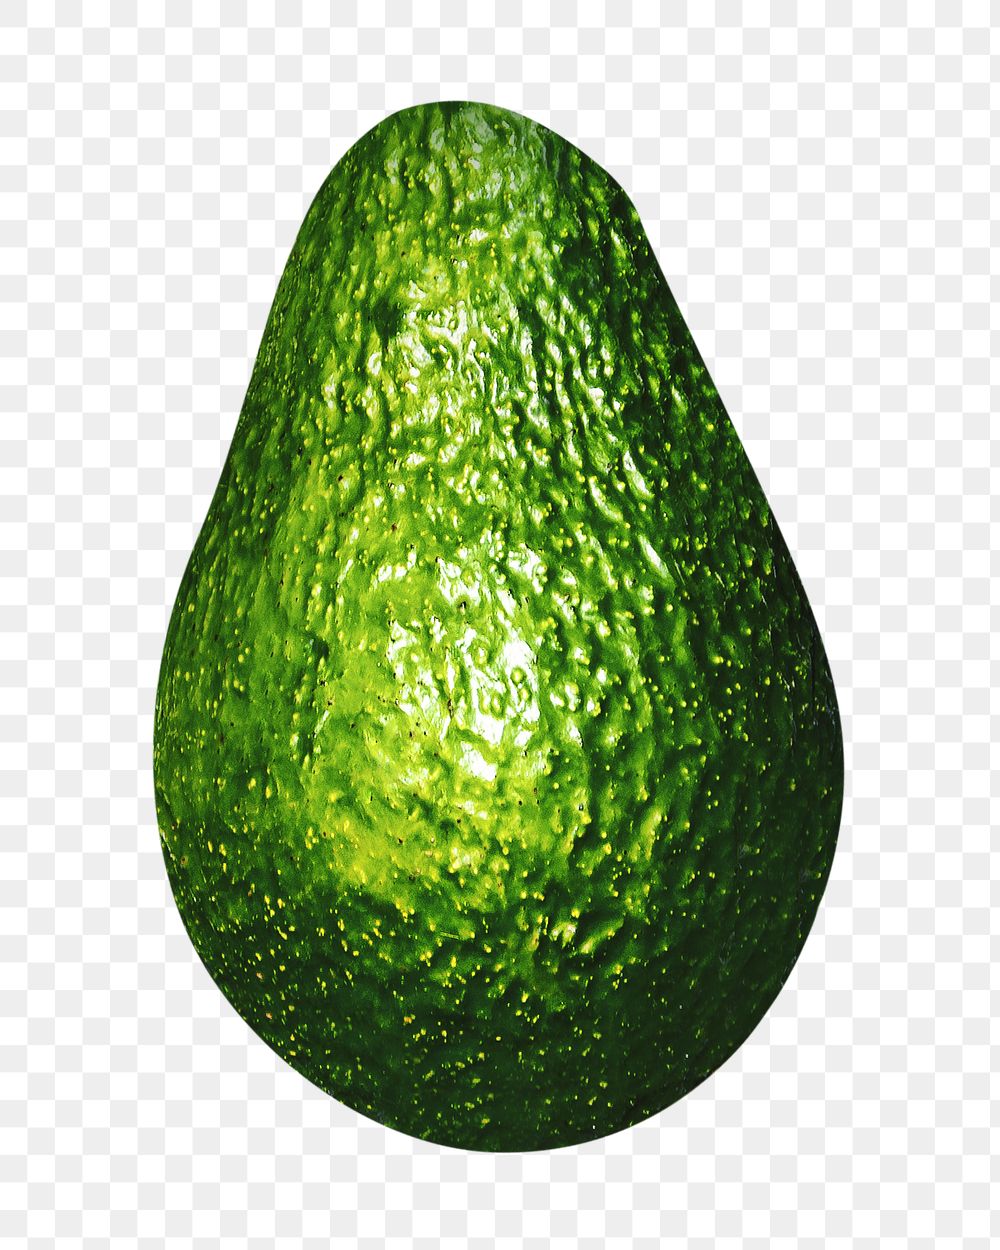 Png avocado, transparent background